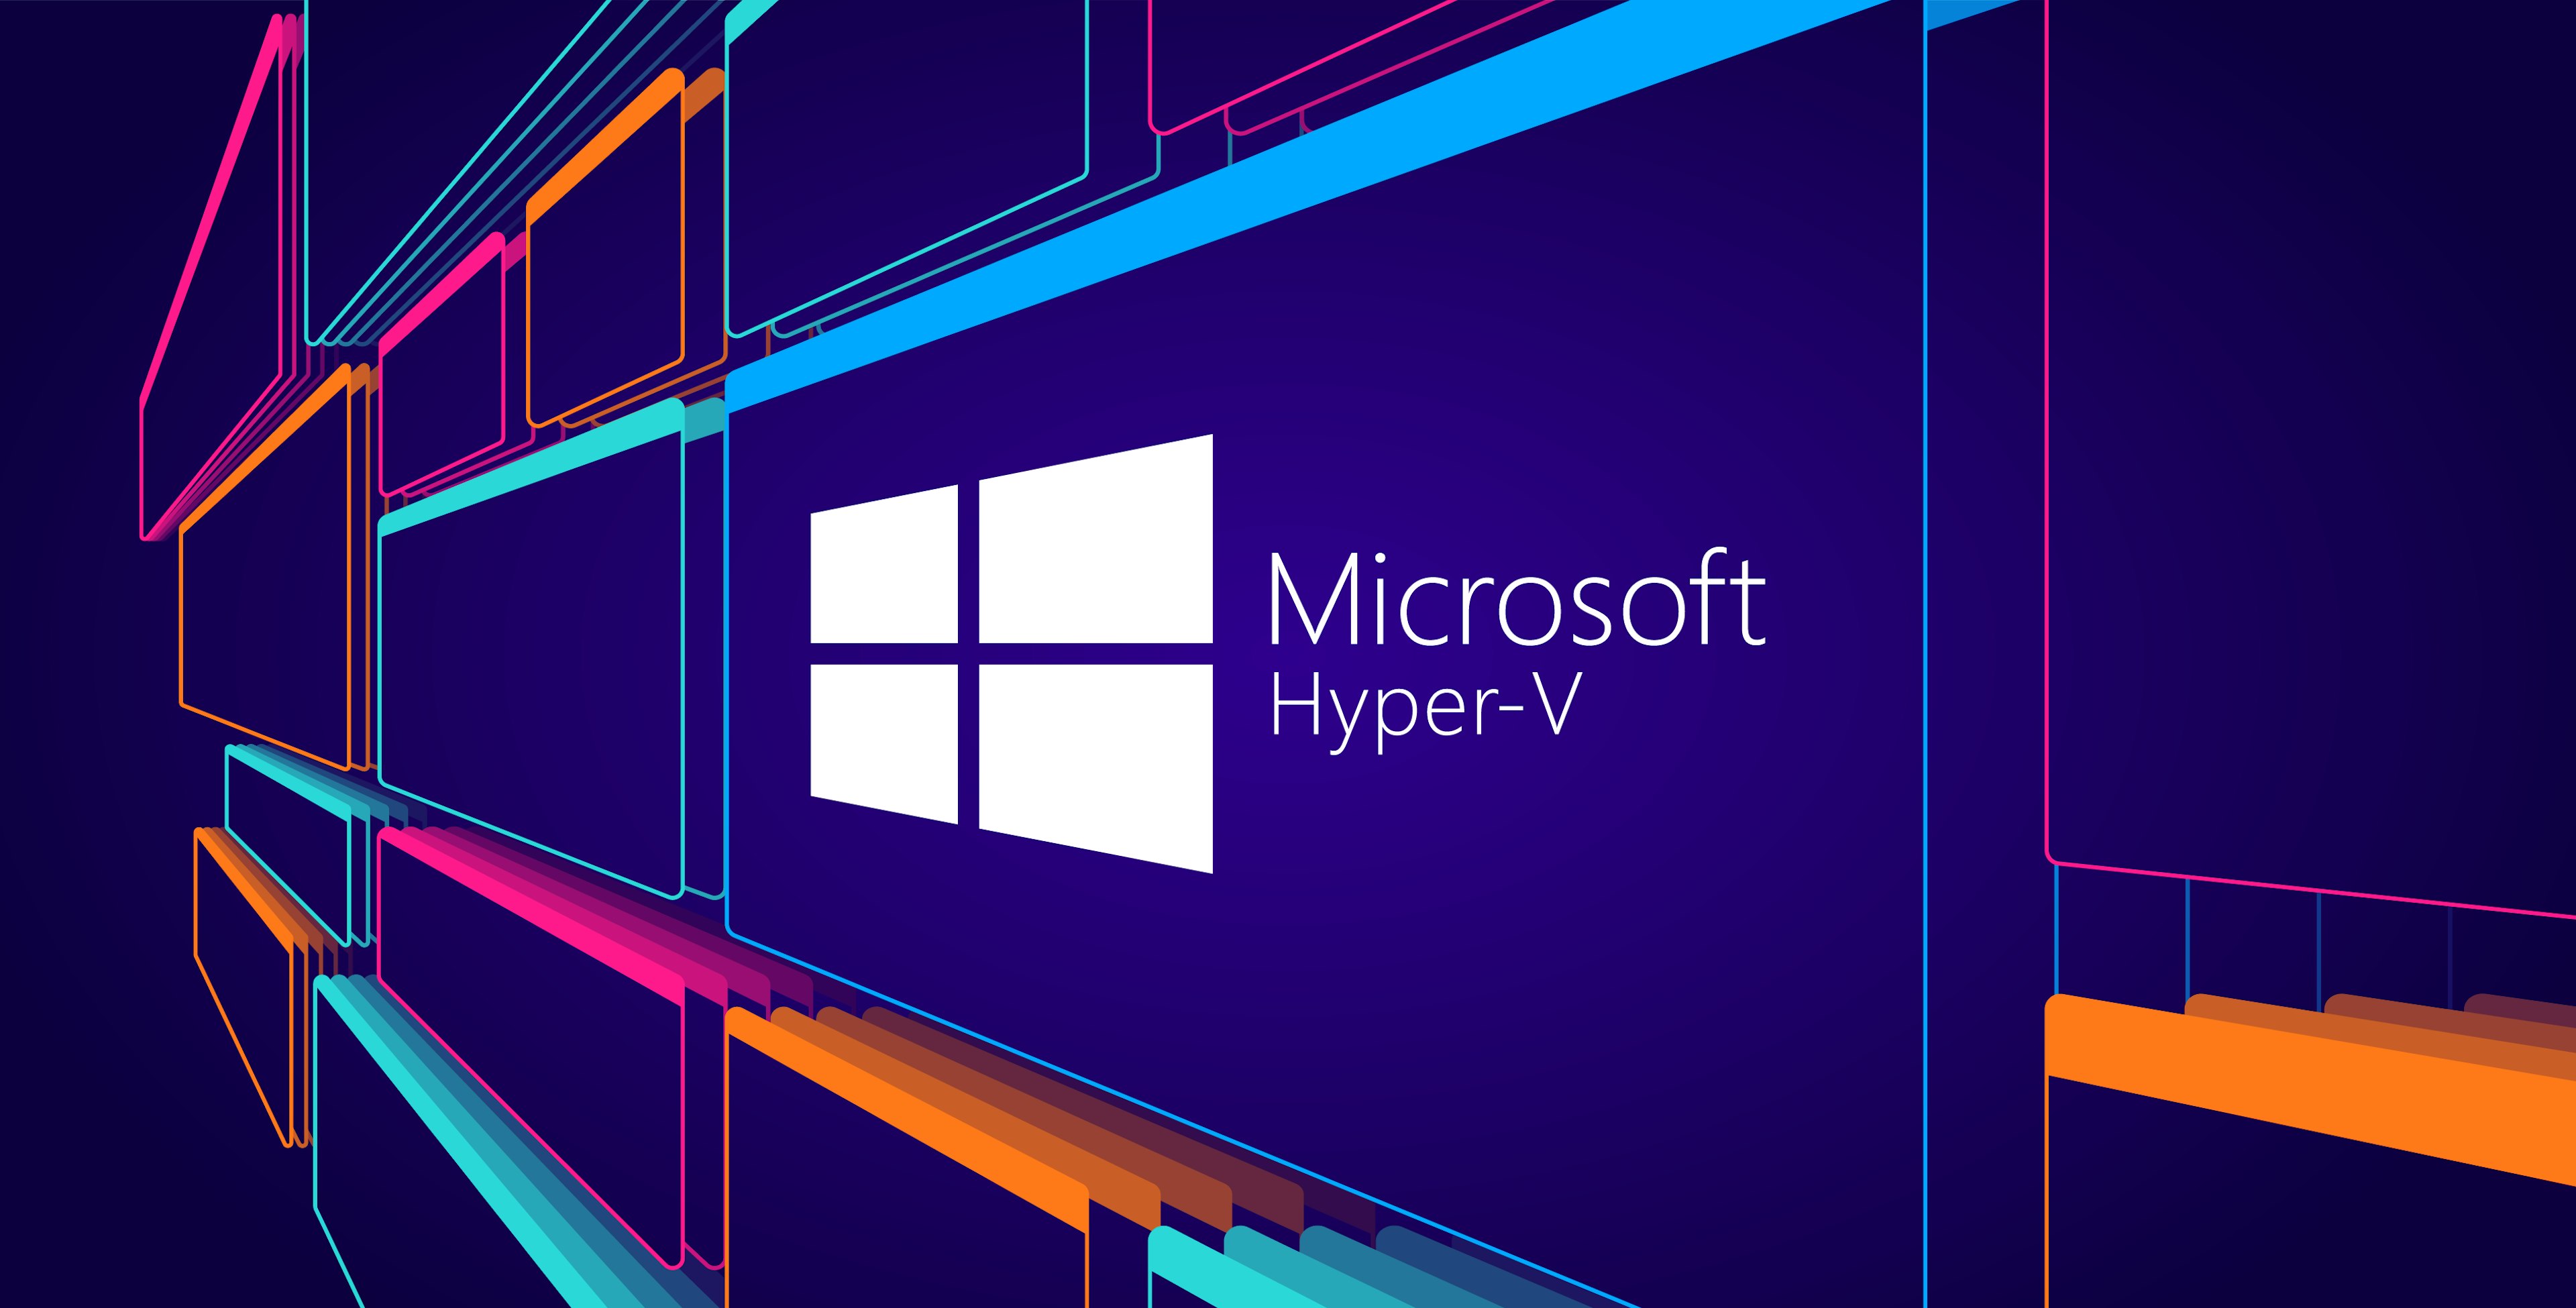 Hyper os system. MS Hyper-v. Виртуальная машина Hyper-v в Windows 10. Гипервизор Microsoft Hyper-v. Microsoft Hyper-v логотип.